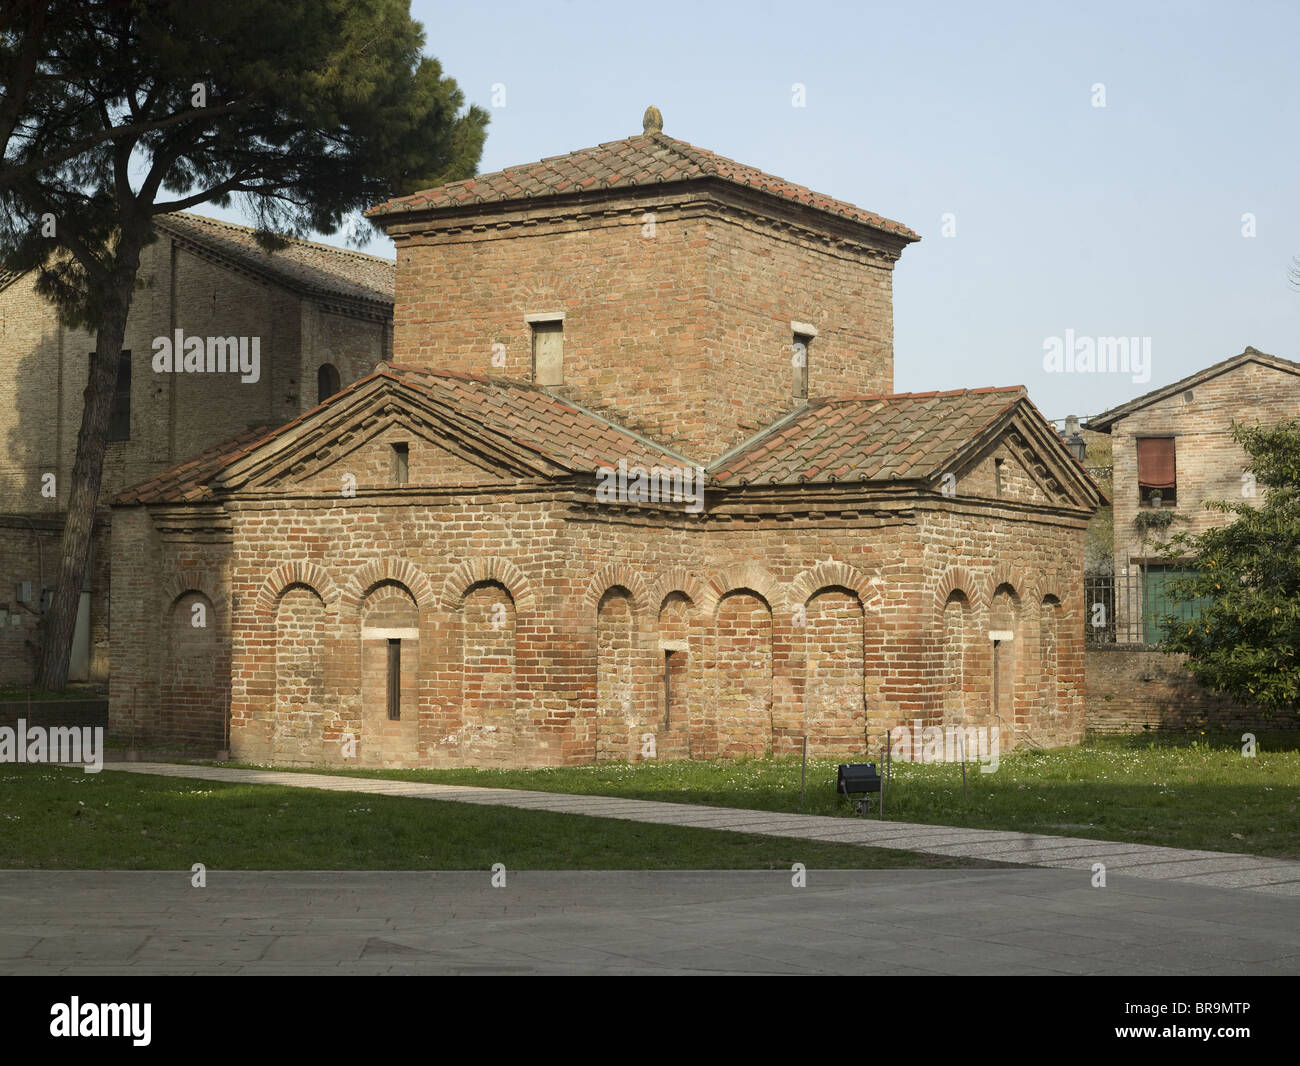 Ravenna, Italia. Mausoleo di Galla Placidia, inteso come tomba per imperatrice romana Galla Placidia. Esterno. Foto Stock